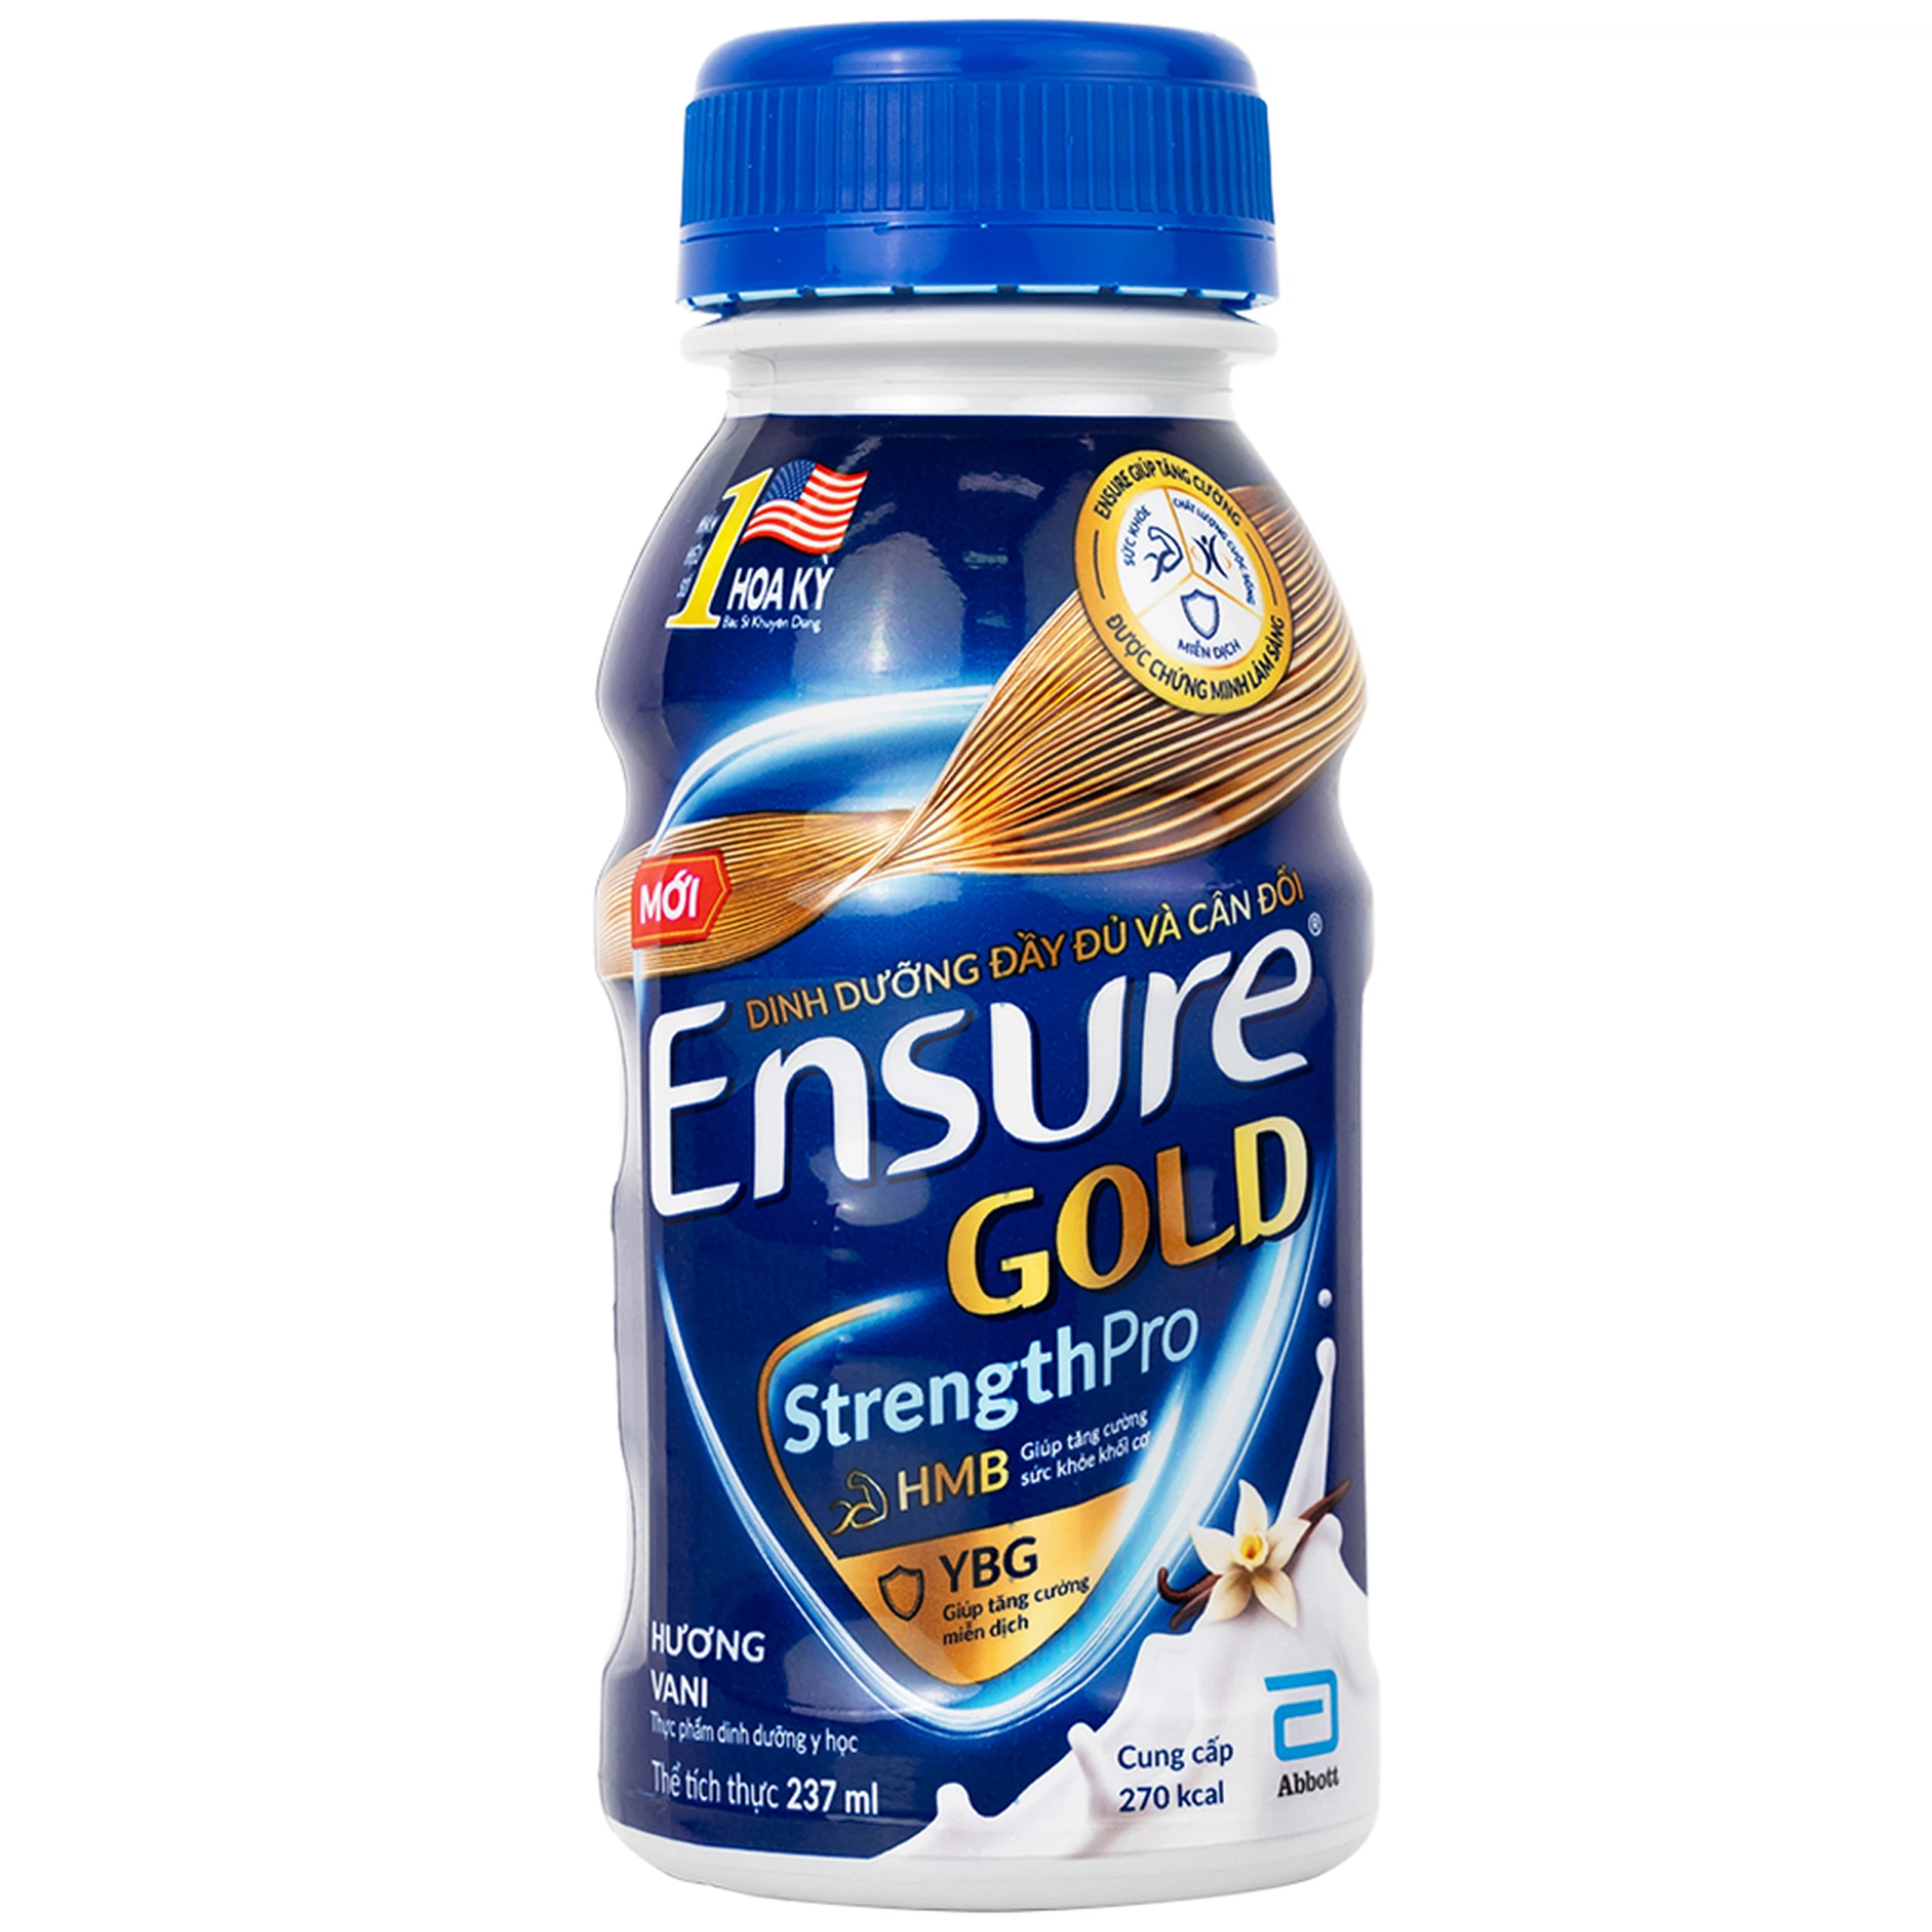 Sữa Ensure Gold StrengthPro hương vani 237ml Abbott tăng cường sức khỏe, tăng cường miễn dịch